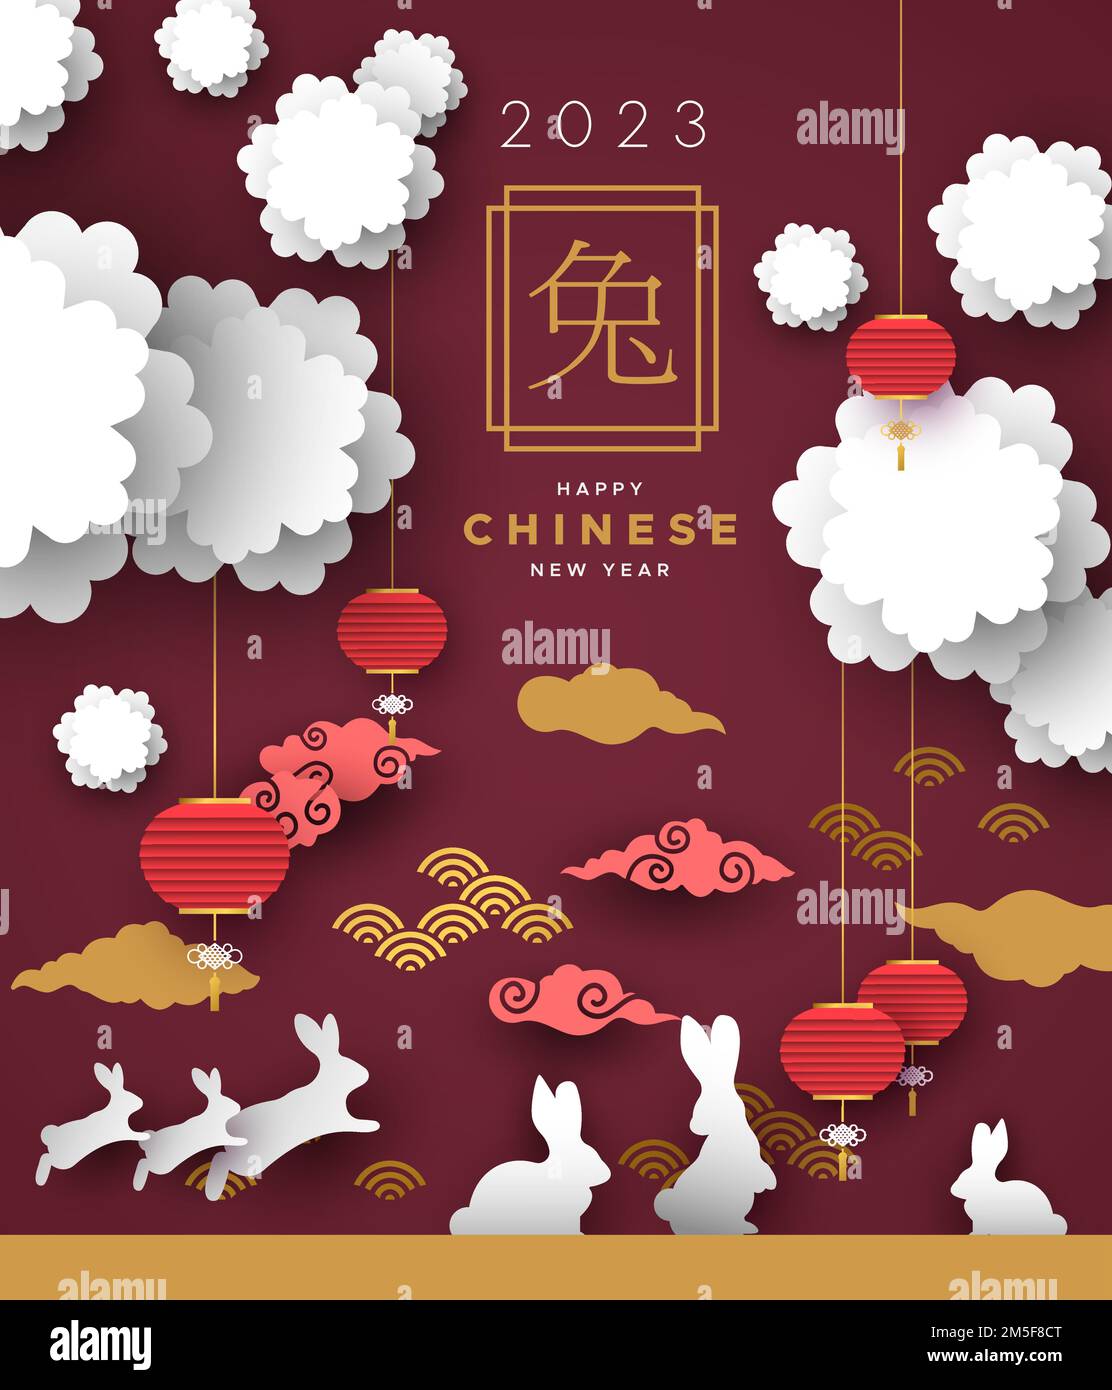 Chinesisches Neujahr 2023 des Kaninchens Illustration einer Handwerkslandschaft aus Paperut mit Kaninchen, Blumen, Wolken und traditionellen asiatischen Laternen. Chinesische Kal Stock Vektor